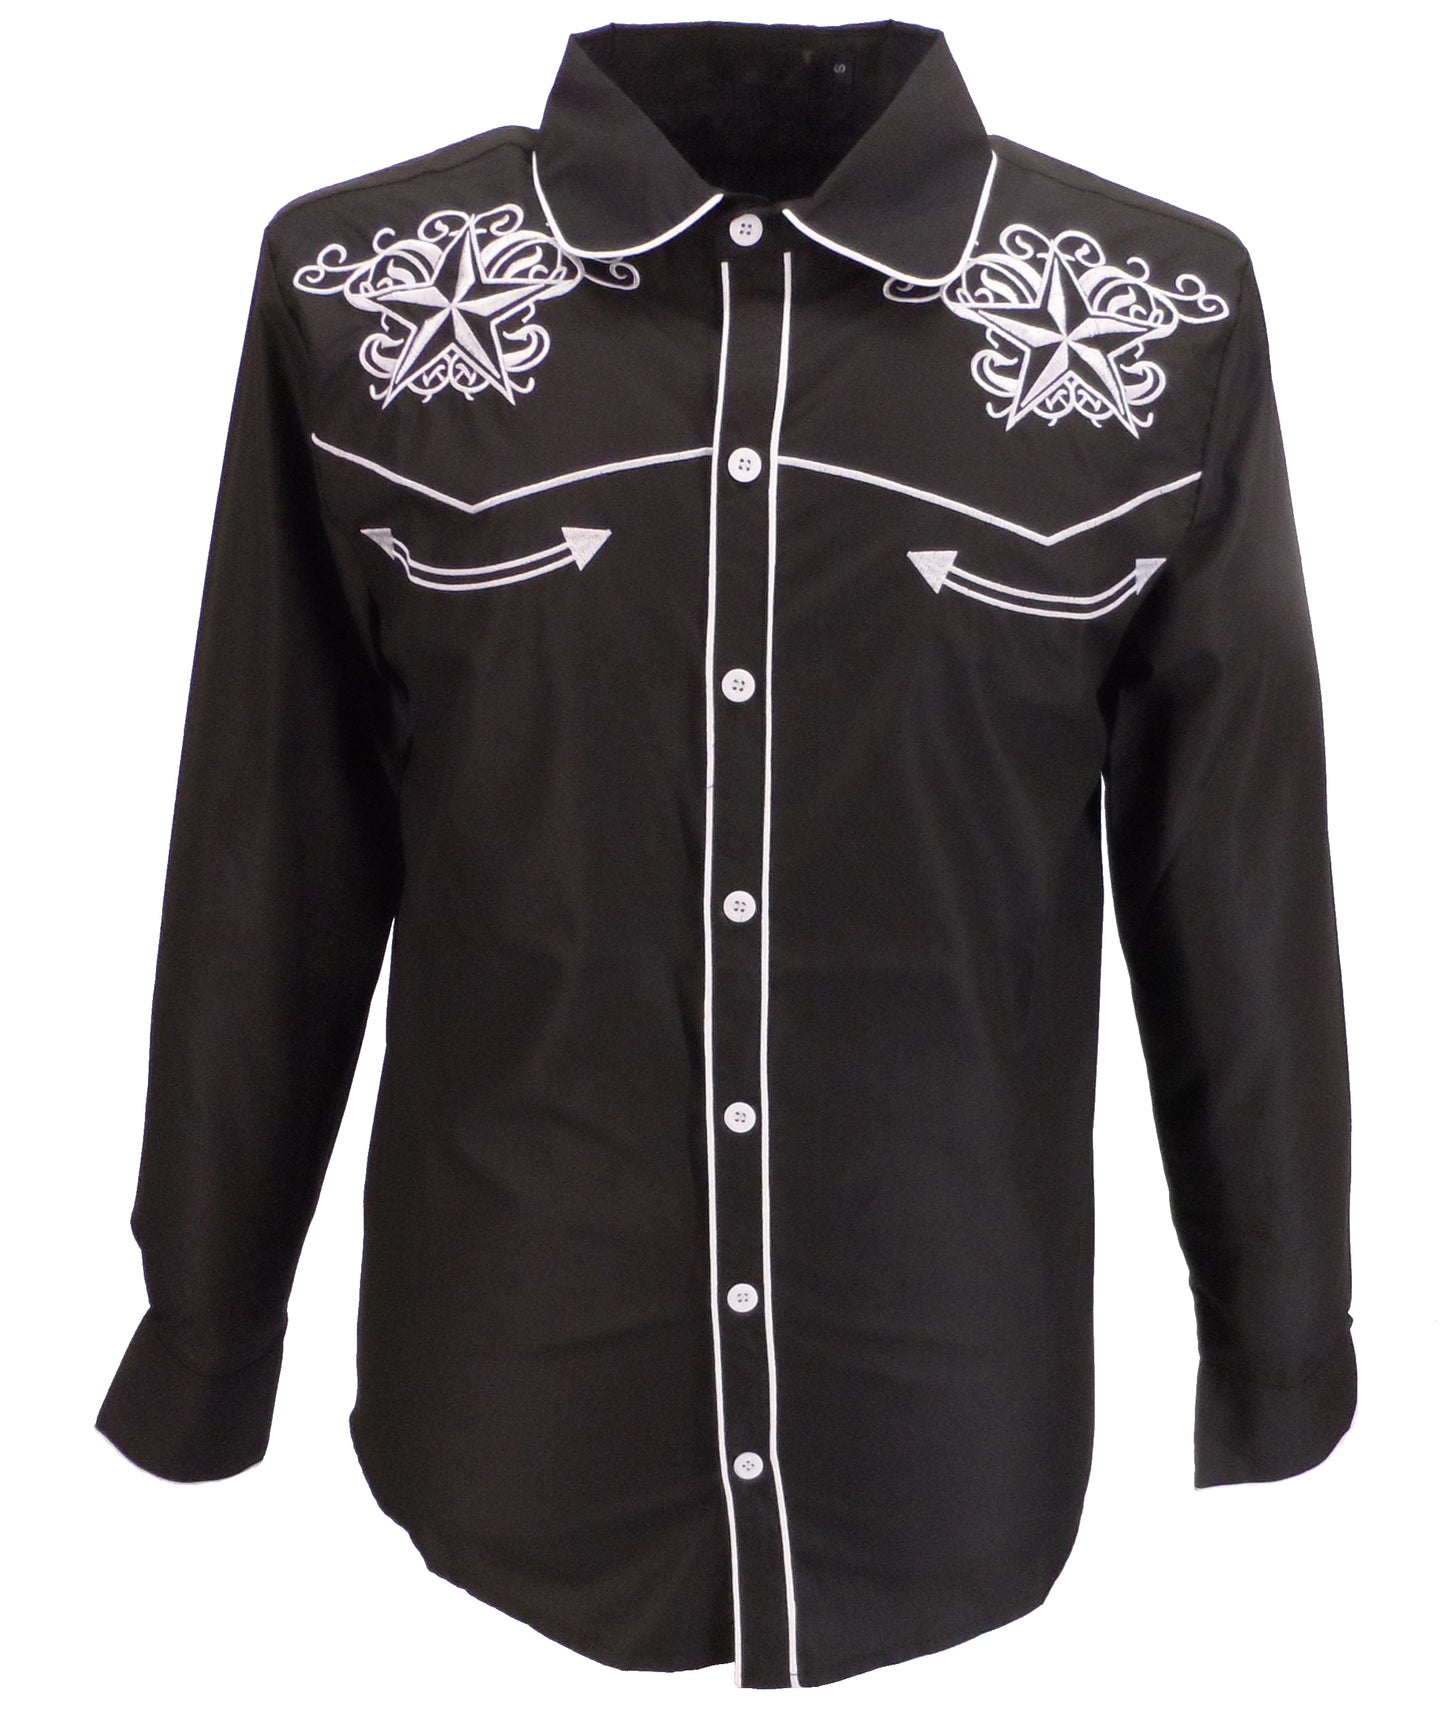 Mazeys camisas vintage/retro de vaquero estrella occidental negra para hombre